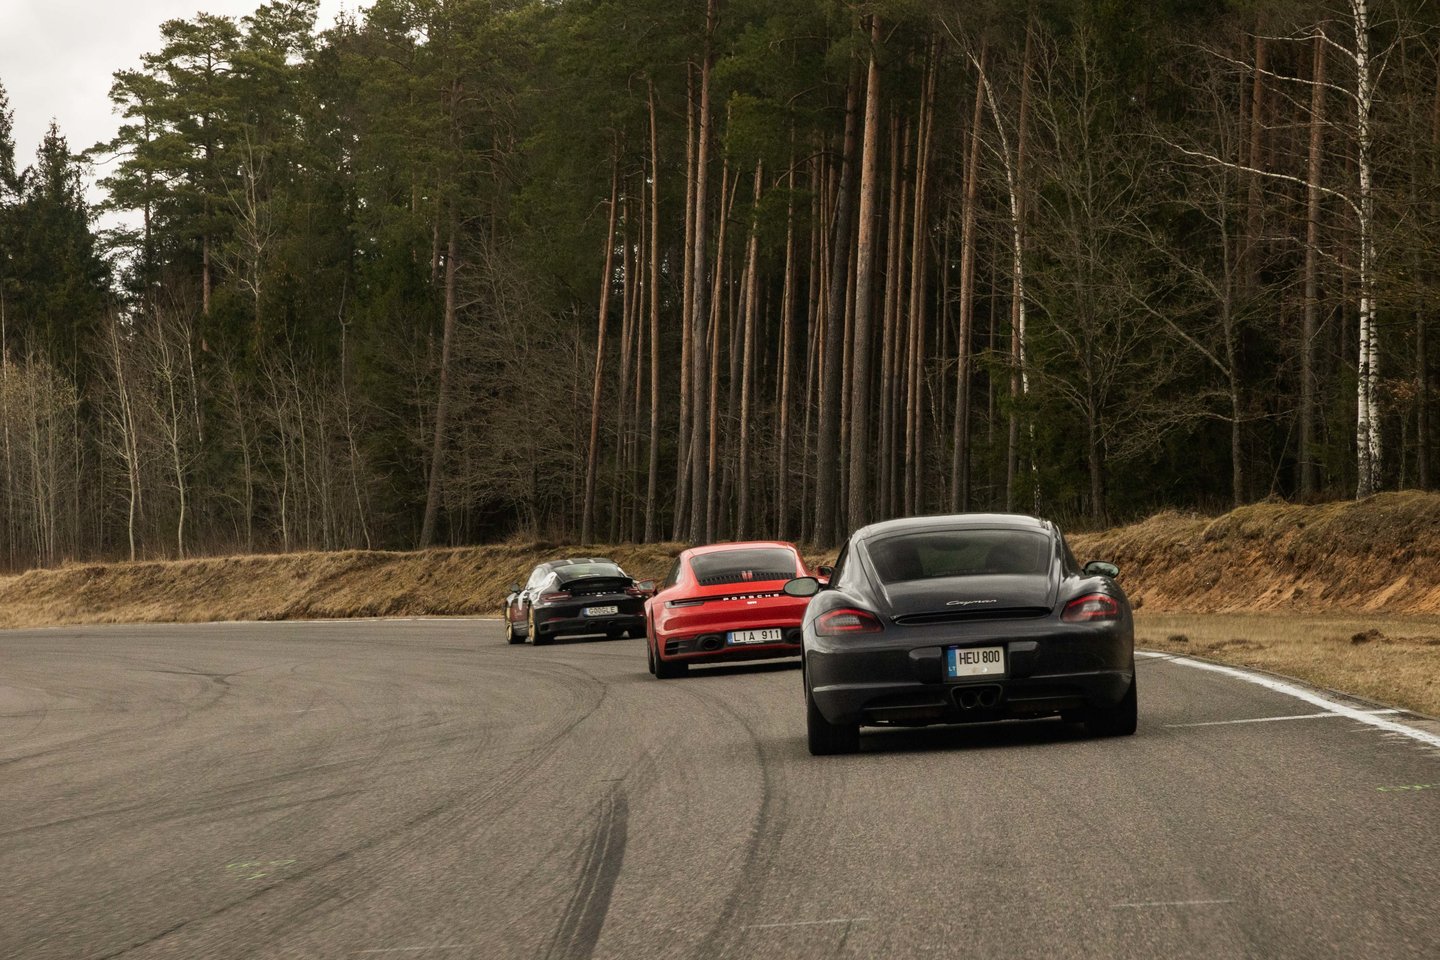 Bendruomenės, vienijančios „Porsche“ automobilių entuziastus, nariai su šeimomis susirinko į Nemuno žiedo trasą ir džiaugsmingai atidarė šiltąjį metų sezoną „Febi Speedfest.lt“ renginyje.<br>Pranešėjų spaudai nuotr.